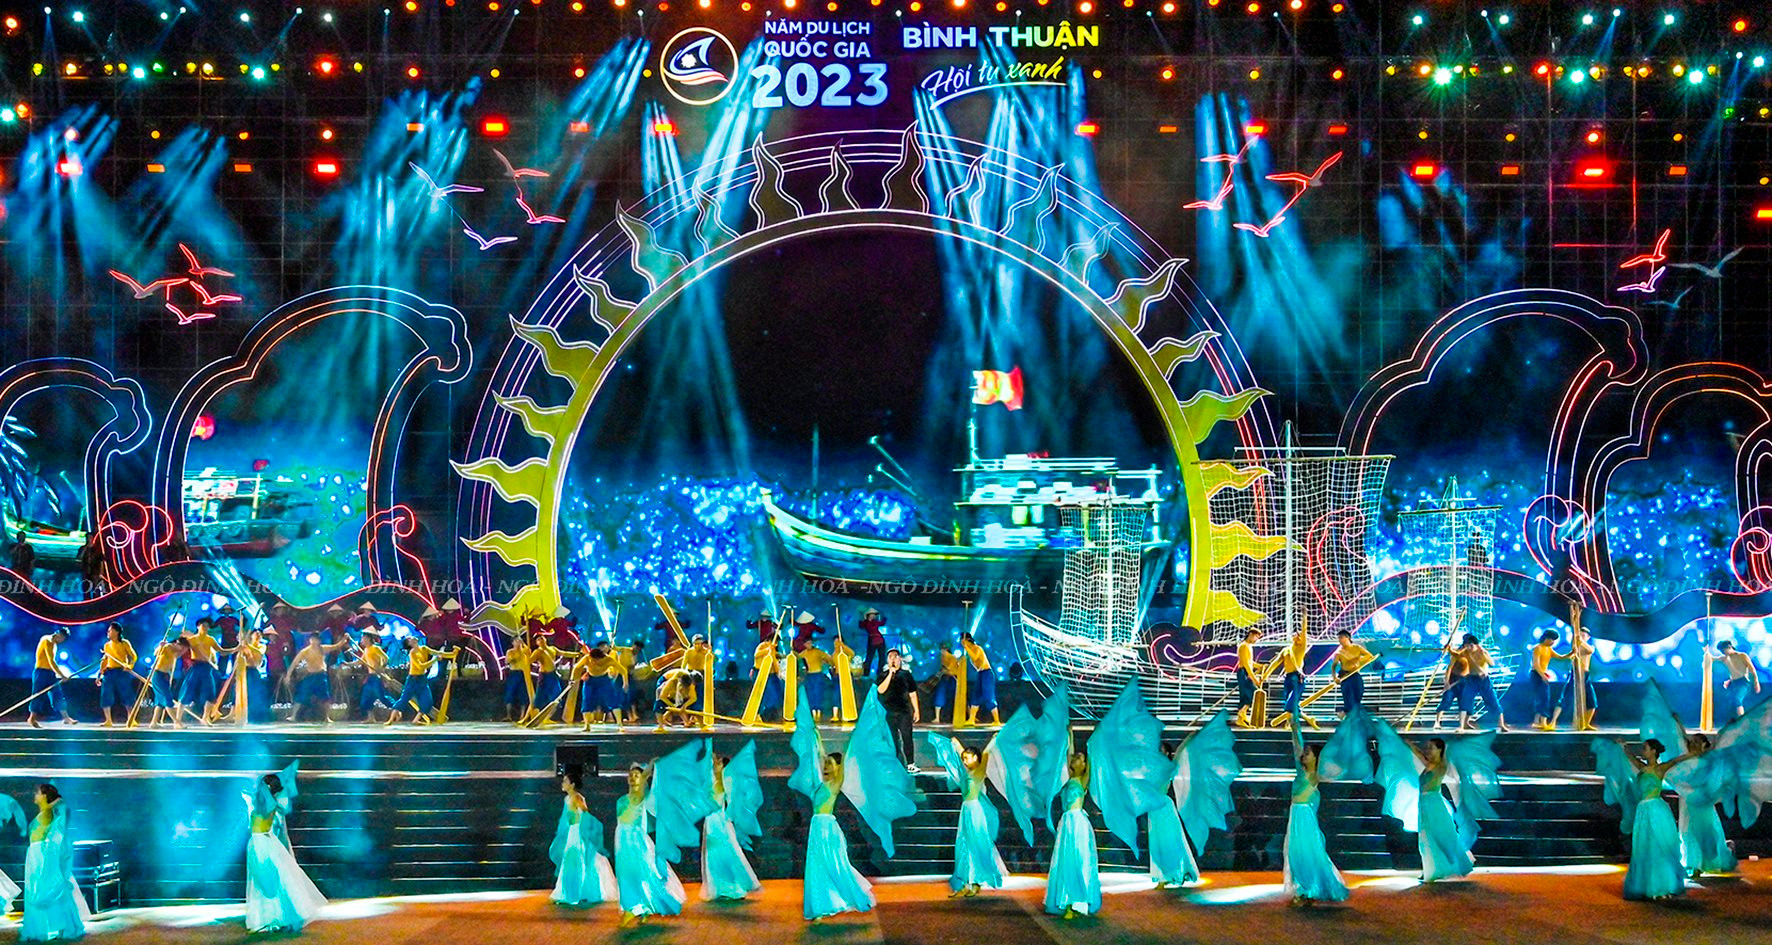 Lễ khai mạc Năm Du lịch quốc gia 2023 - “Bình Thuận - Hội tụ xanh”: Hoành tráng, đặc sắc, ấn tượng...